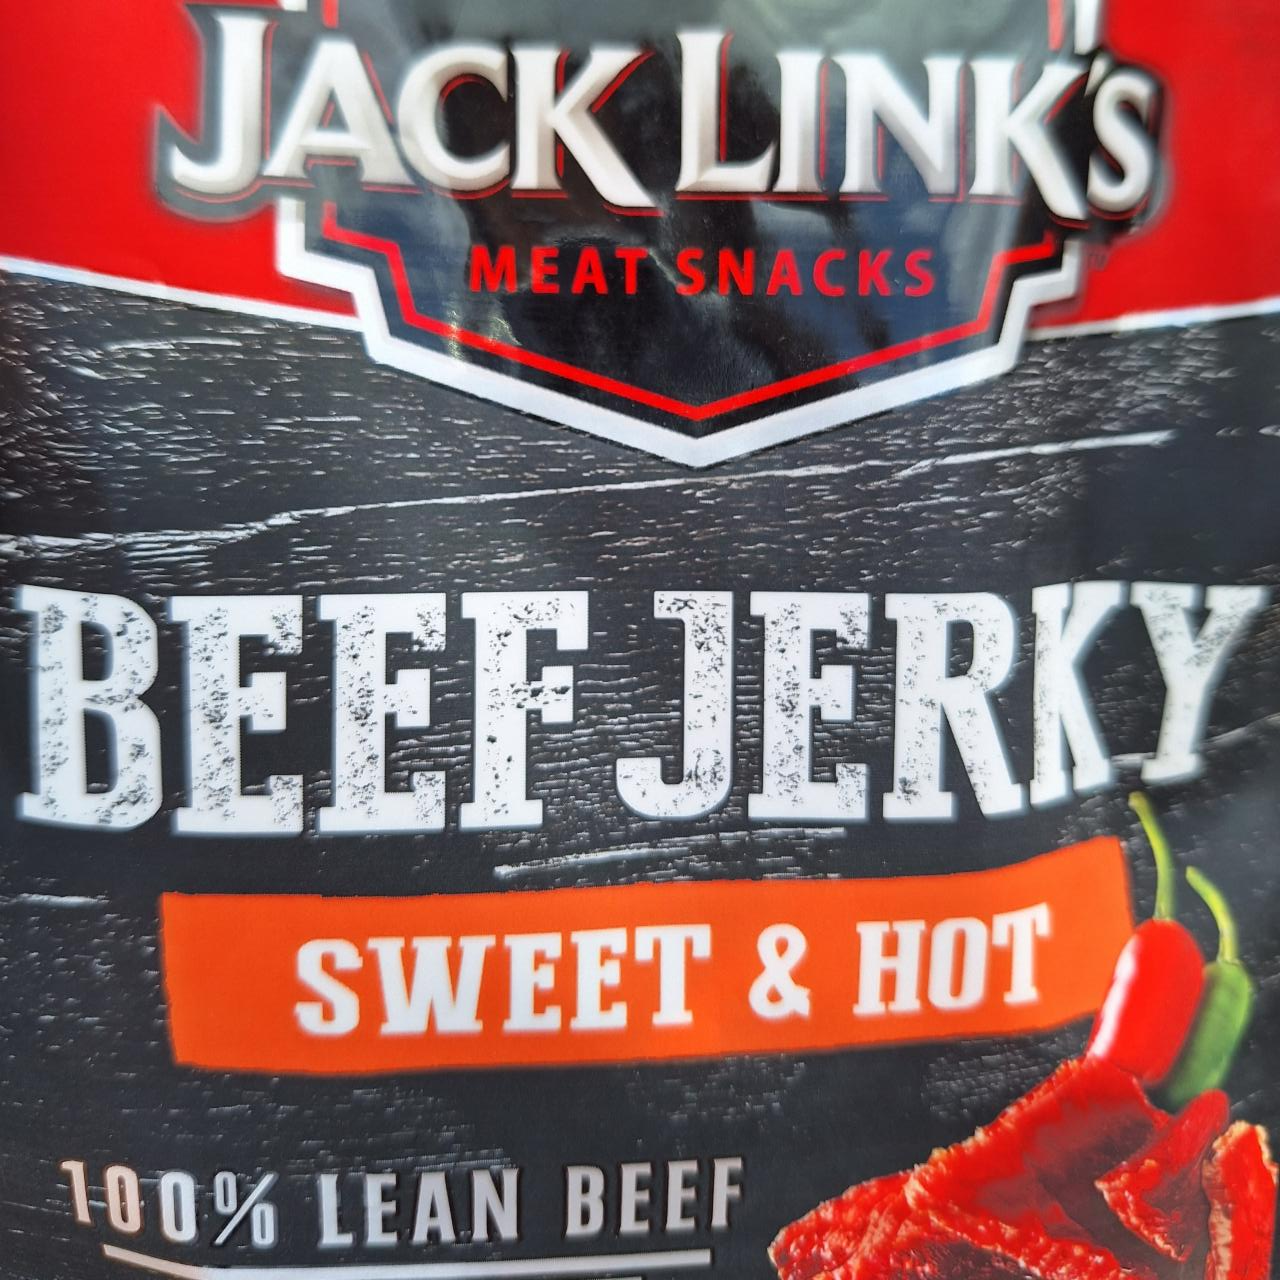 Fotografie - Beef jerky sweet & hot Jack Link's